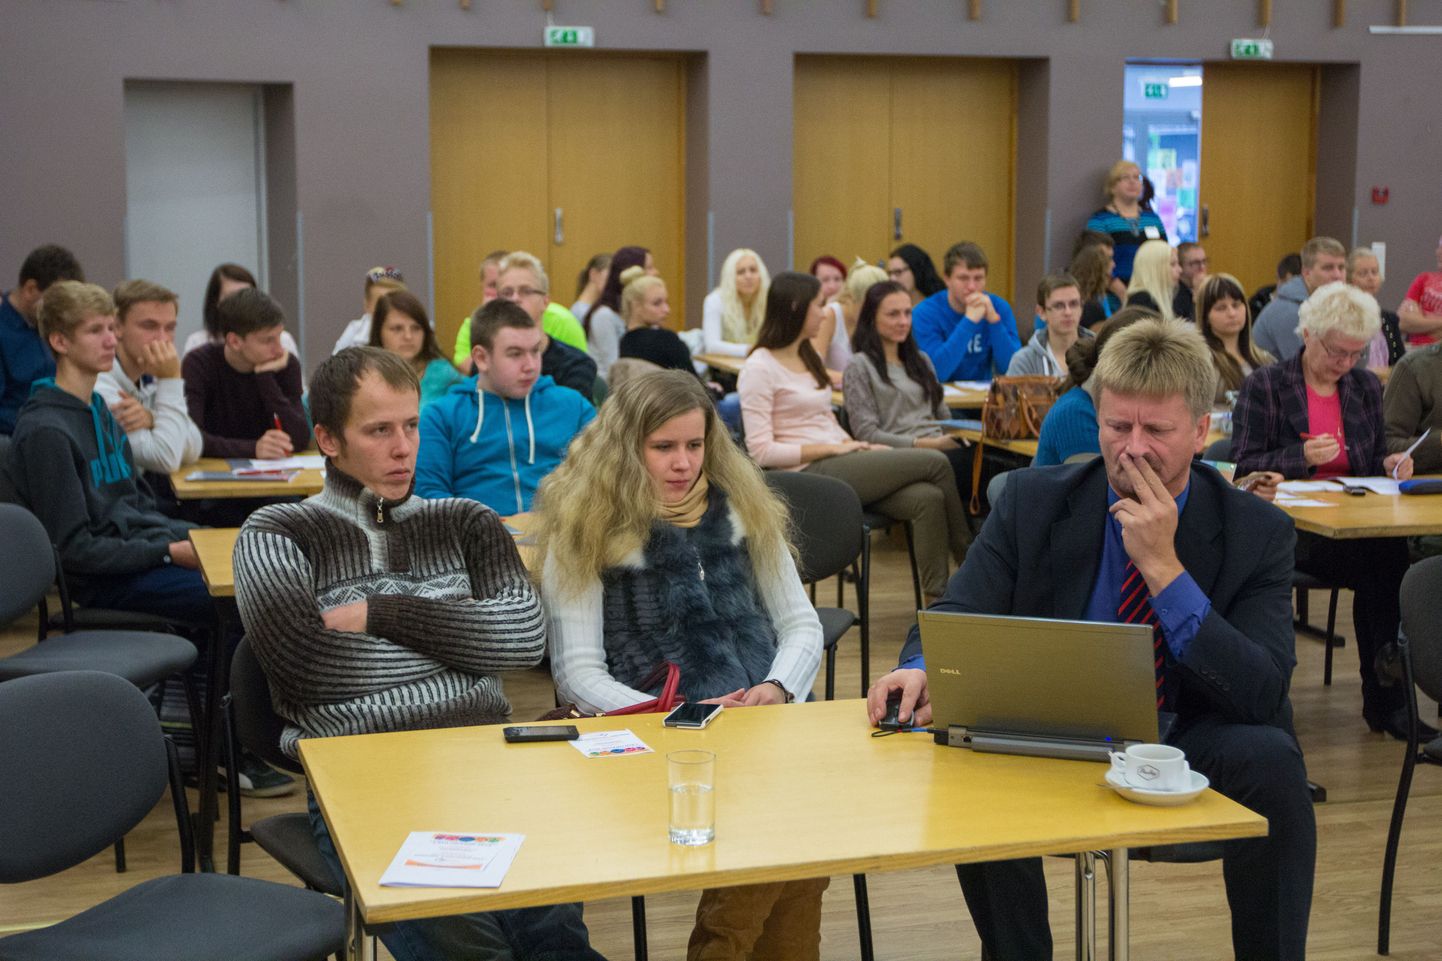 Ettevõtluskonverentsile Valga kultuurikeskusesse tuli teisipäeval kohale üle saja huvilise, kelle hulgas ametnikke, teadureid ning ettevõtjaid. Poole publikust moodustasid Valga gümnaasiumi gümnasistid, kellest tulevikus võivad saada ettevõtjad. Teiste seas pidas ettekande ka Tartu Ülikooli regionaalplaneeringu dotsent Garri Raagmaa (ees paremal).